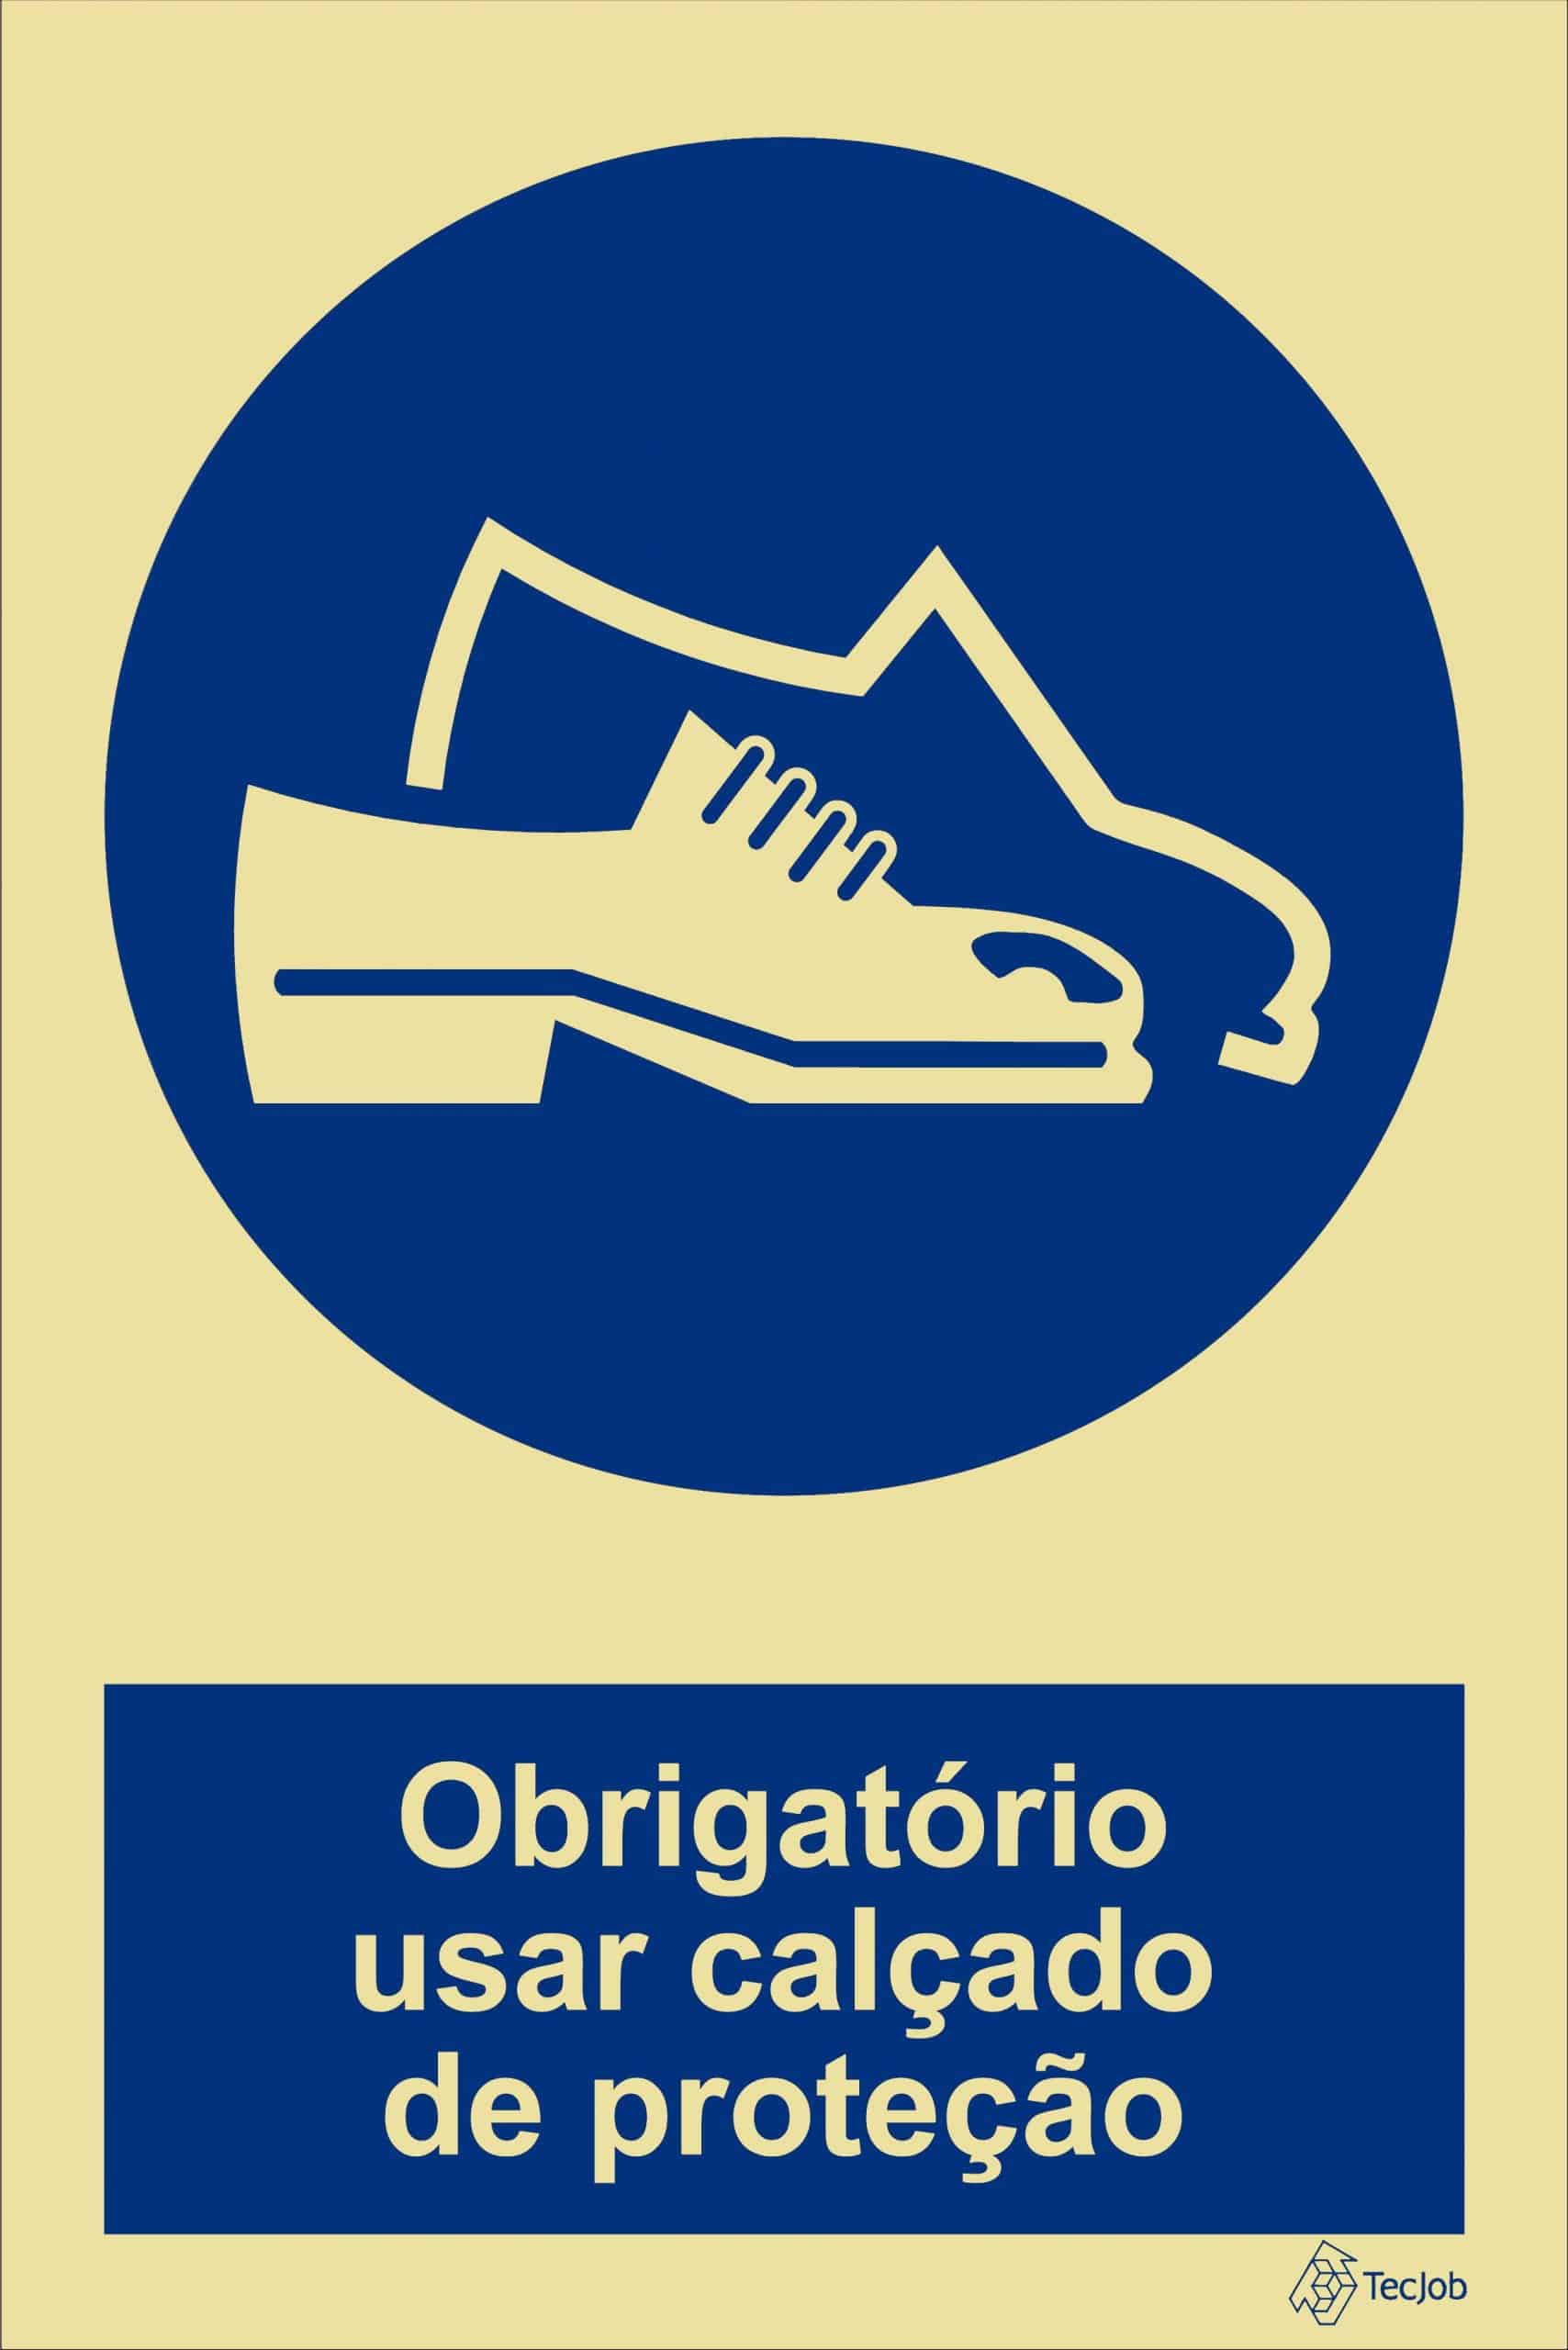 sinaletica obrigatório usar calçado de proteção OB0054